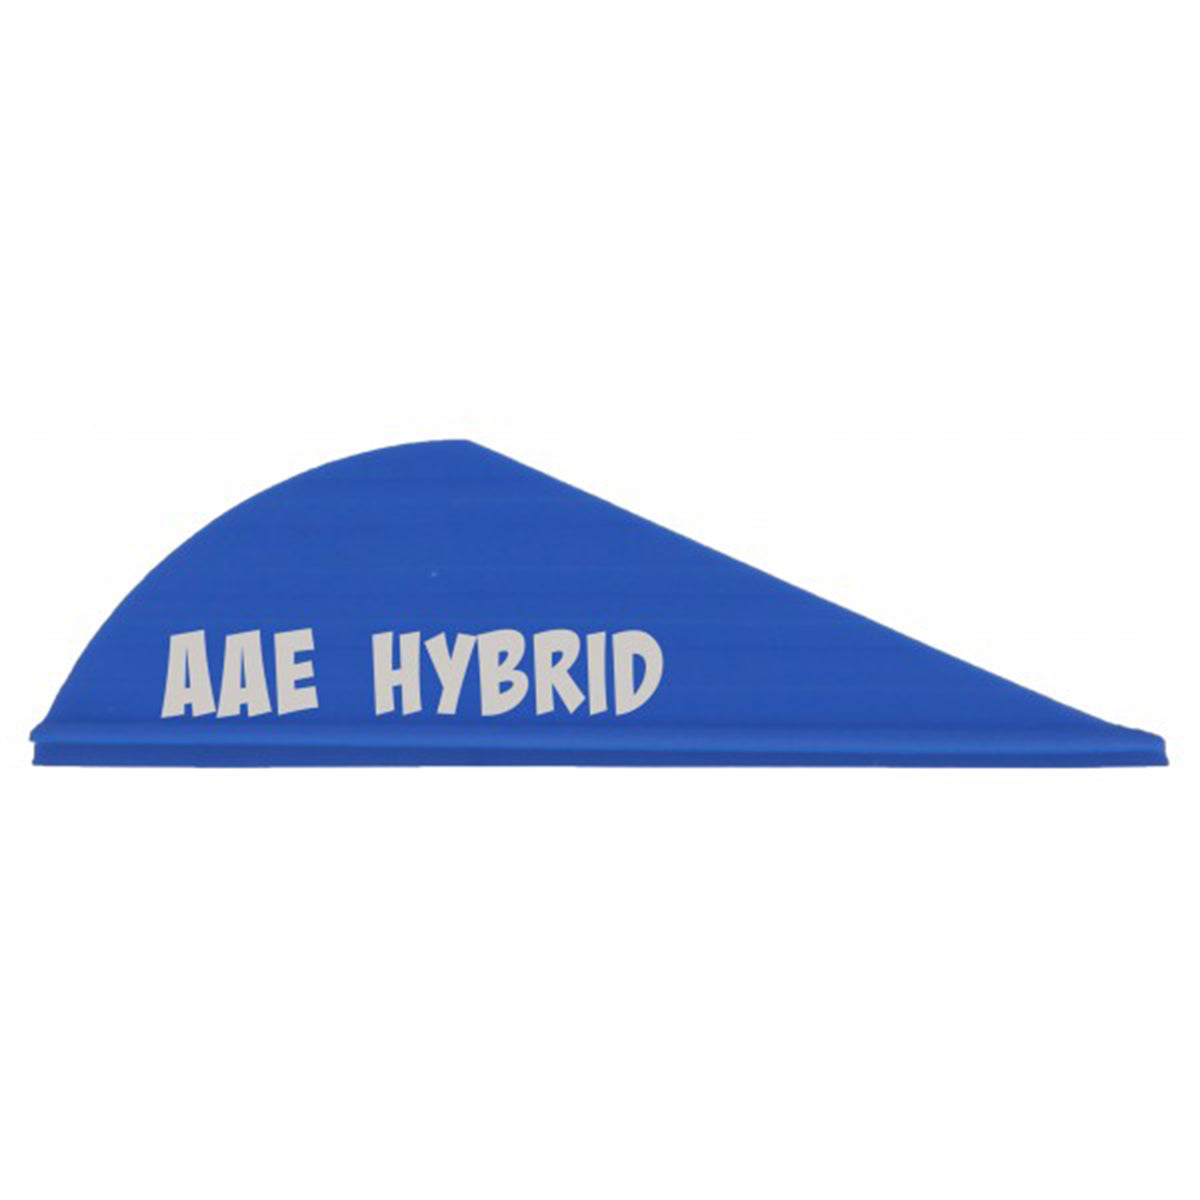 AAE Hybrid HP Arrow Vanes - 100 Pack in Blue by GOHUNT | AAE - GOHUNT Shop